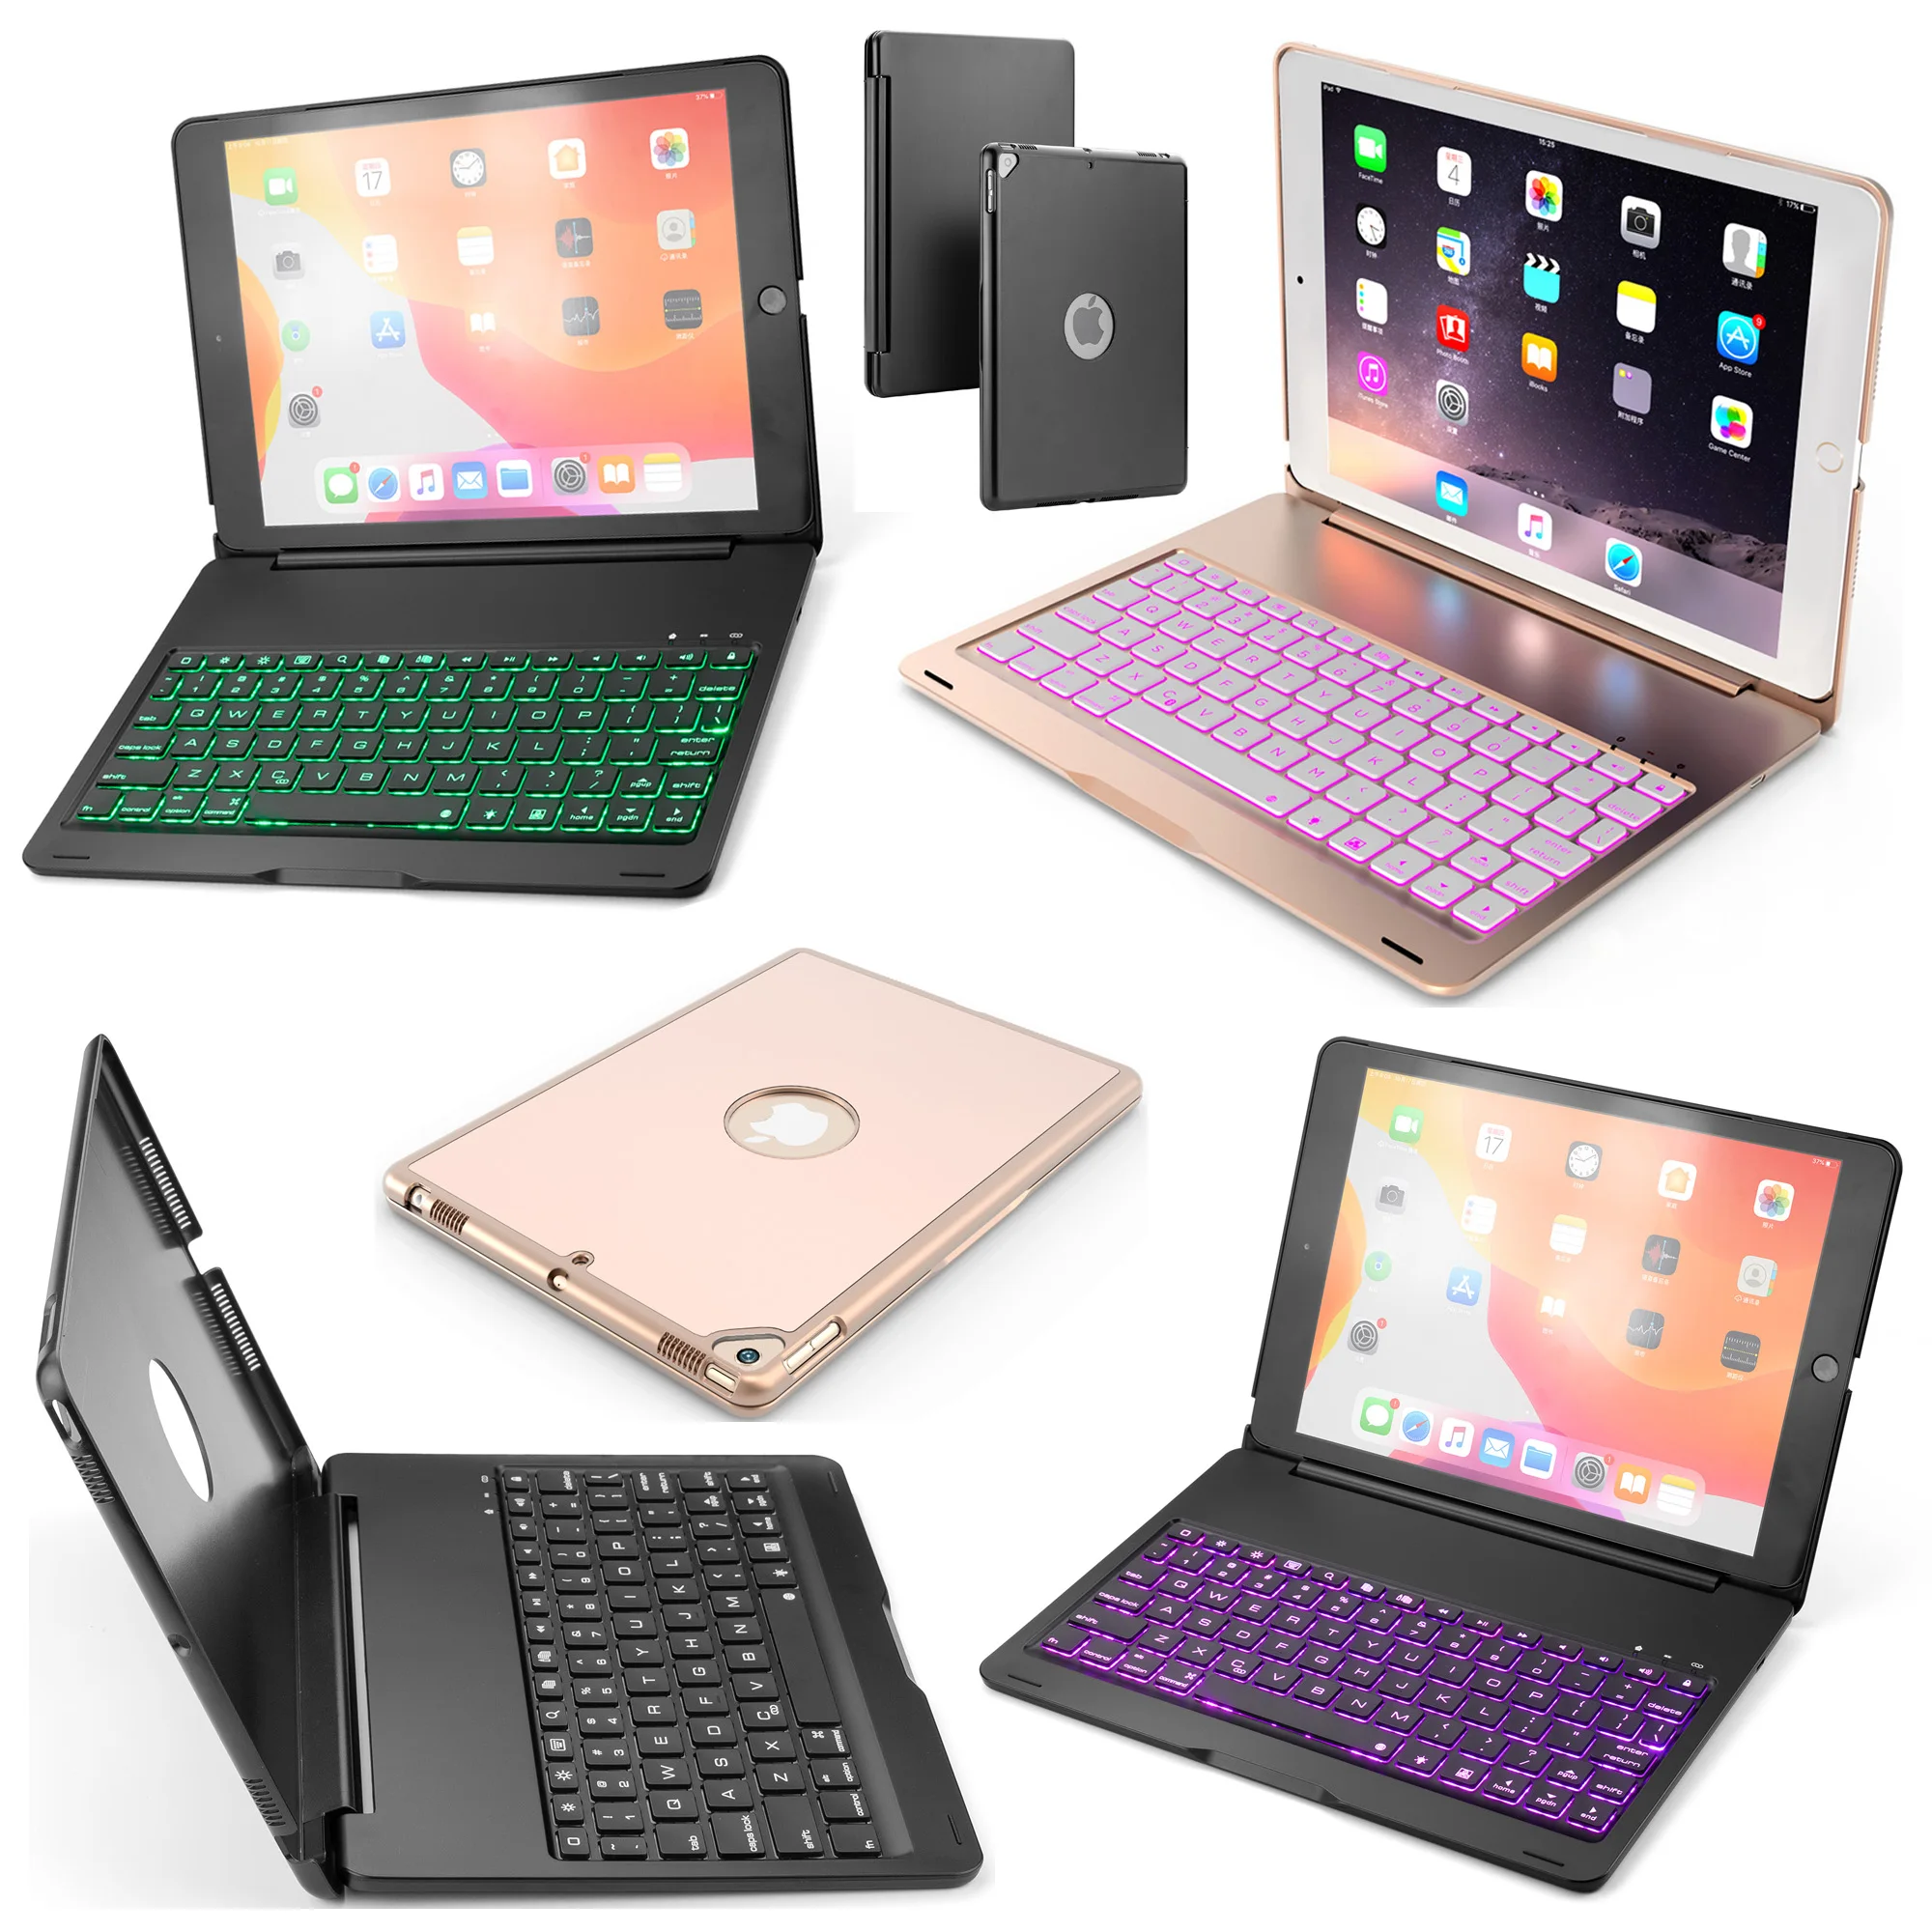 7 цветов, светодиодный, с подсветкой, русский/Иврит/испанский, беспроводной, Bluetooth клавиатура, складной чехол, чехол для Apple iPad 10,2, планшет, Funda